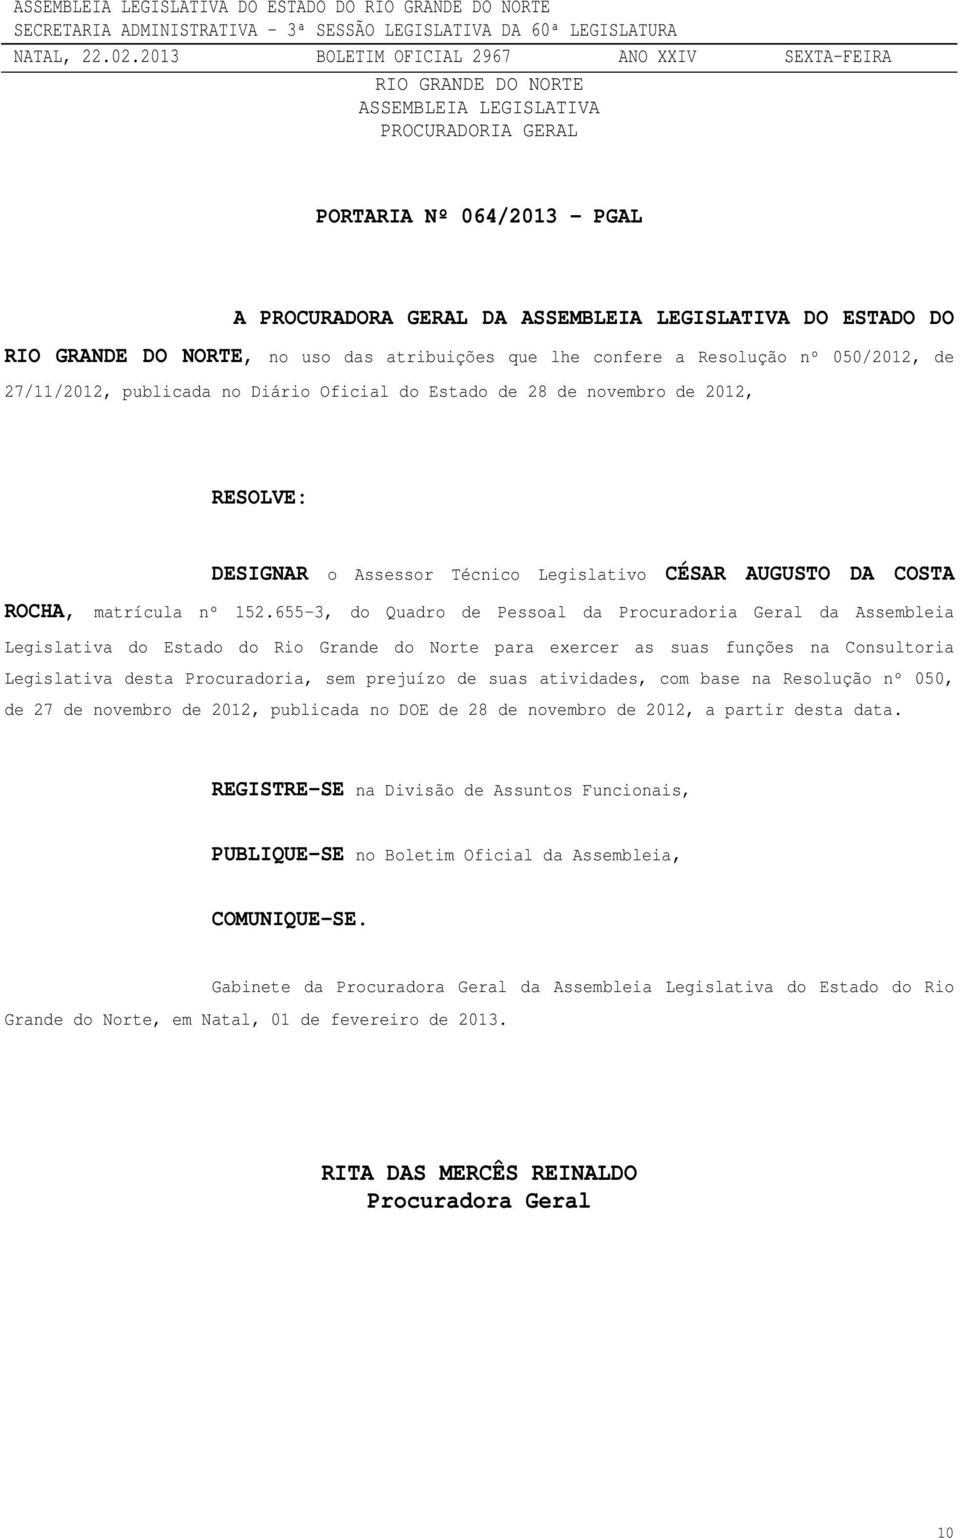 655-3, do Quadro de Pessoal da Procuradoria Geral da Assembleia Legislativa do Estado do Rio Grande do Norte para exercer as suas funções